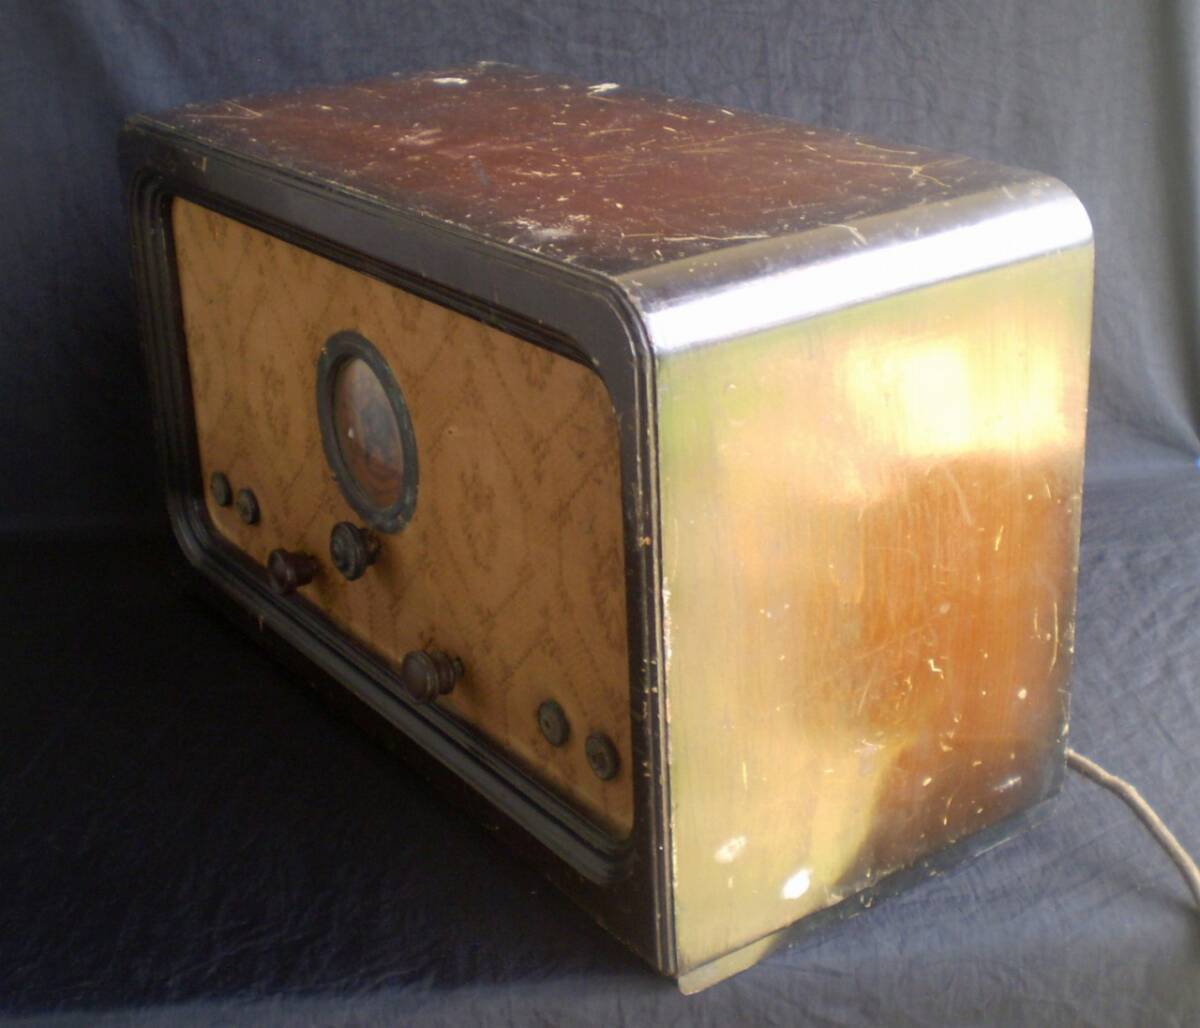  radio vacuum tube wooden Airplane Dial junk antique interior part removing 